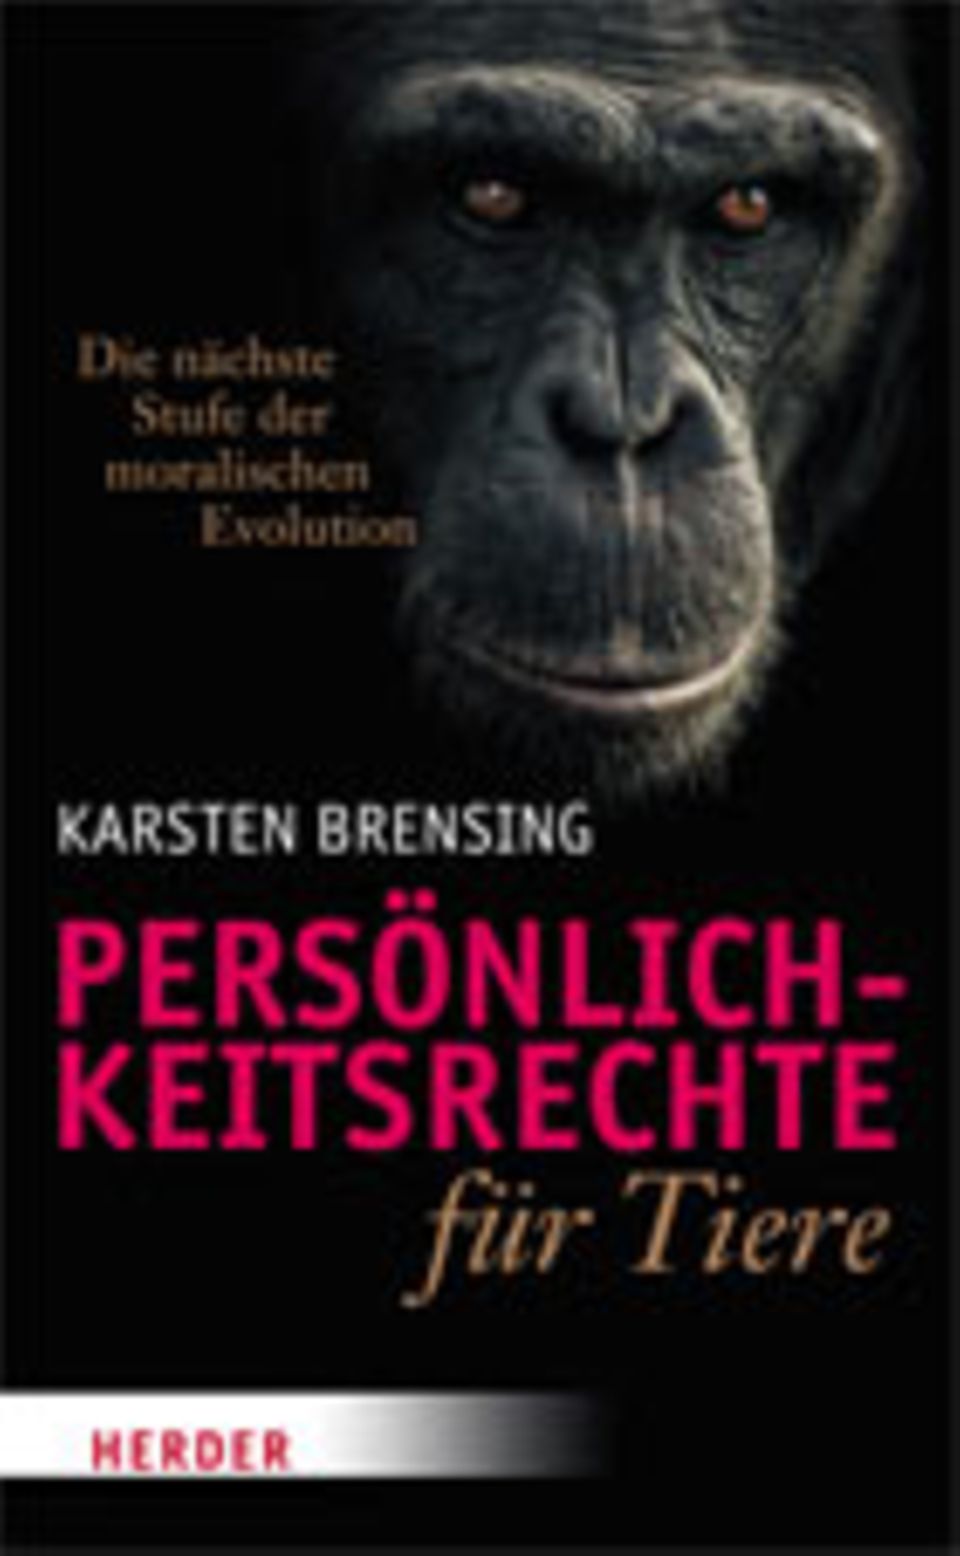 Schutz für Wale: Karsten Brensing Persönlichkeitsrechte für Tiere Herder Verlag 2013 200 S., 17,99 Euro Mehr Informationen